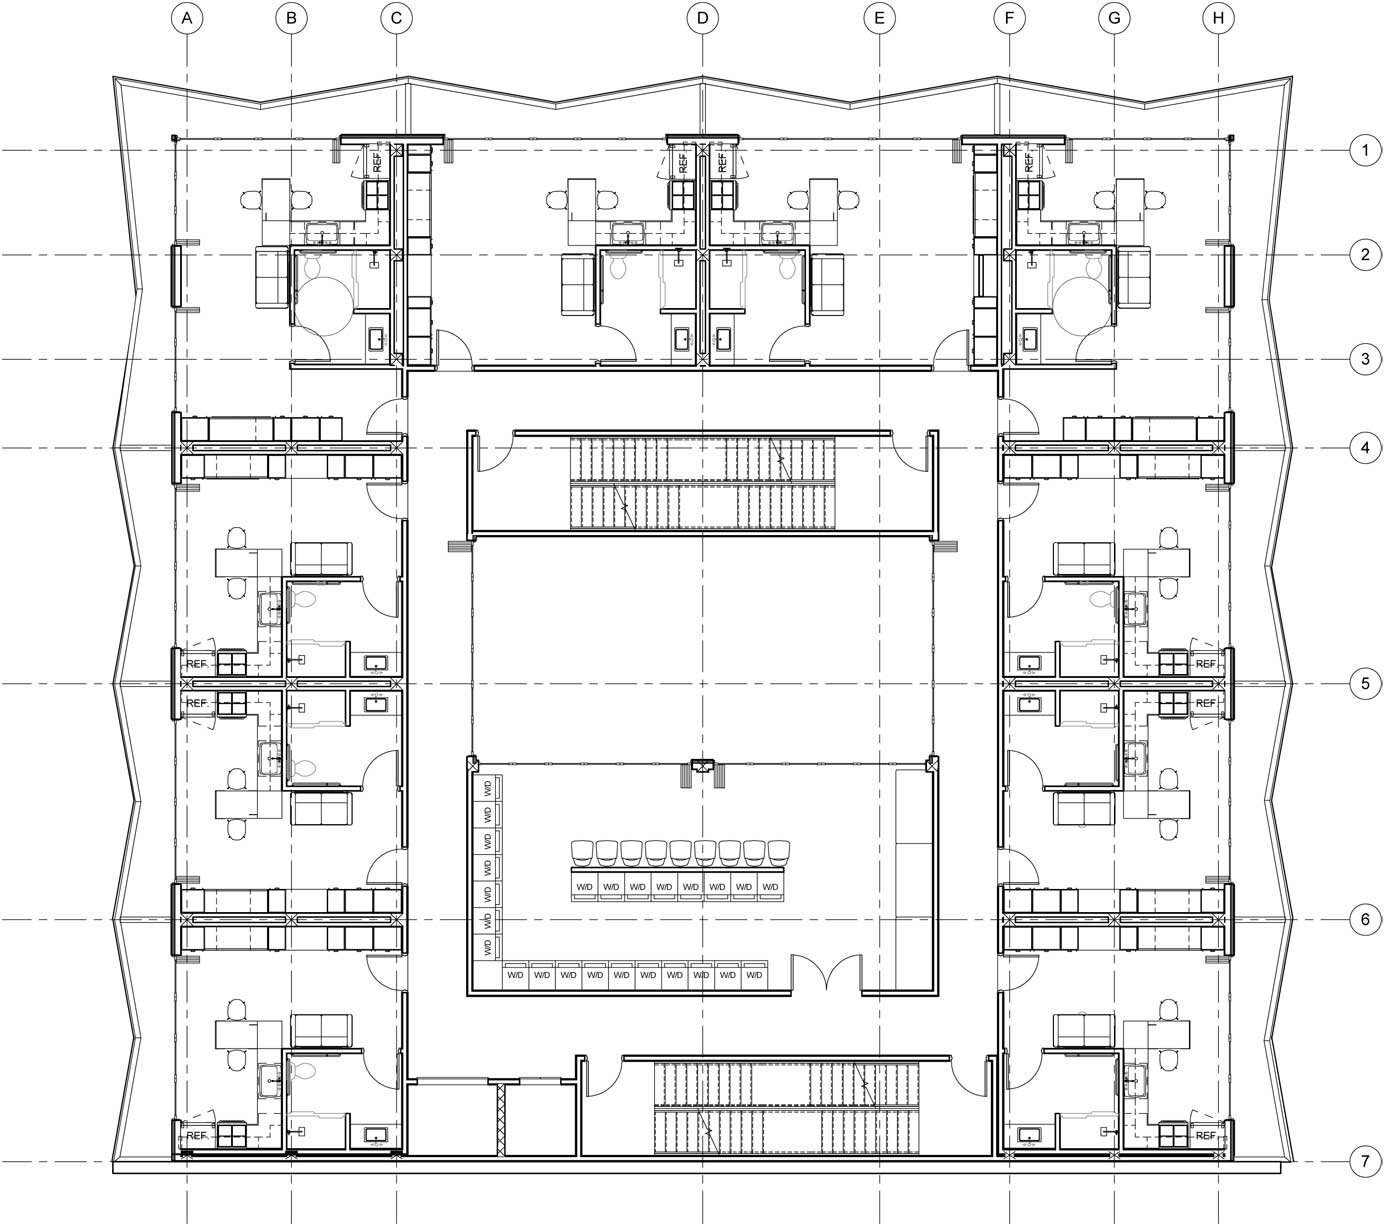 NYC-Micro-Dwellings-2nd-Floor-Plan.jpg